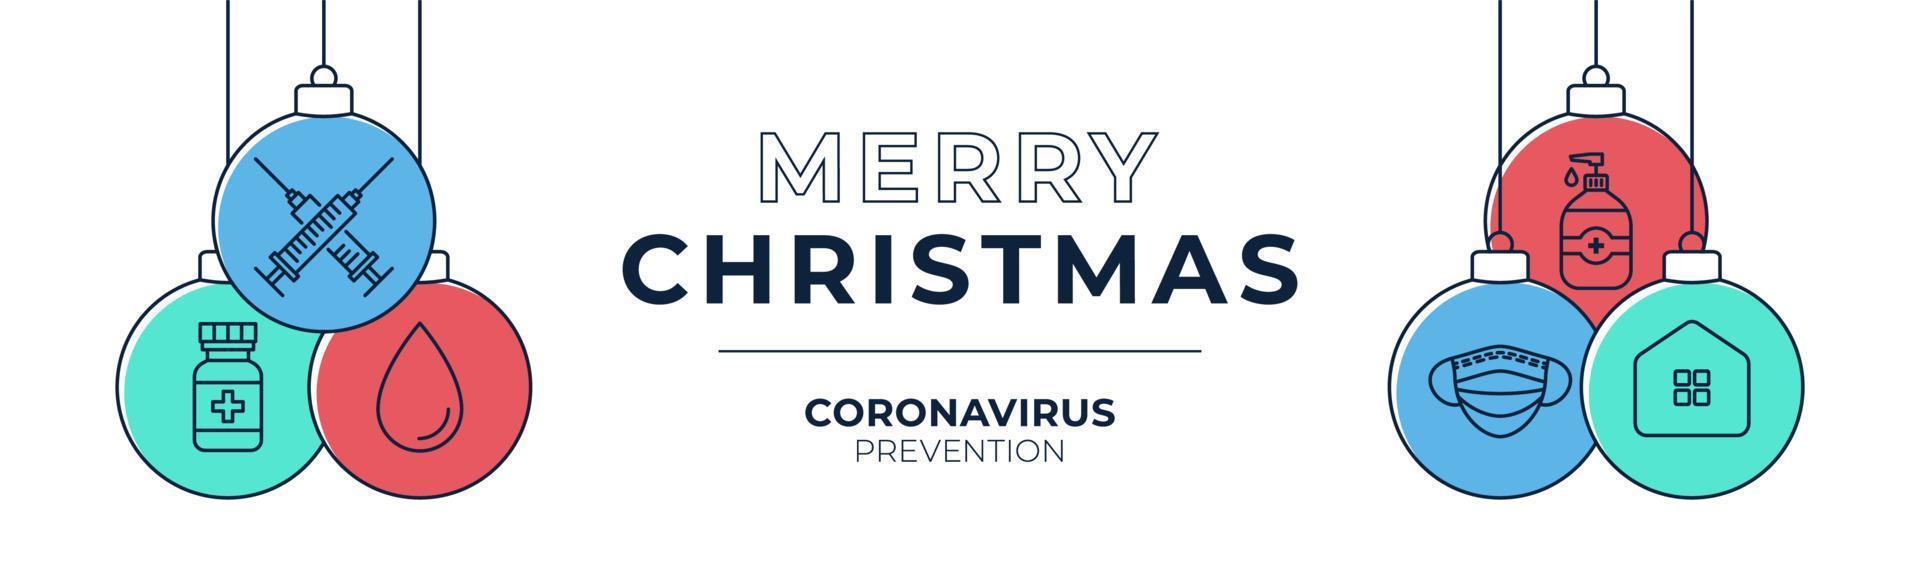 Banner de bola de prevención de vacuna de coronavirus de Navidad. prevención del concepto de navidad o año nuevo enfermedad covid-19, bola plana de dibujos animados vector